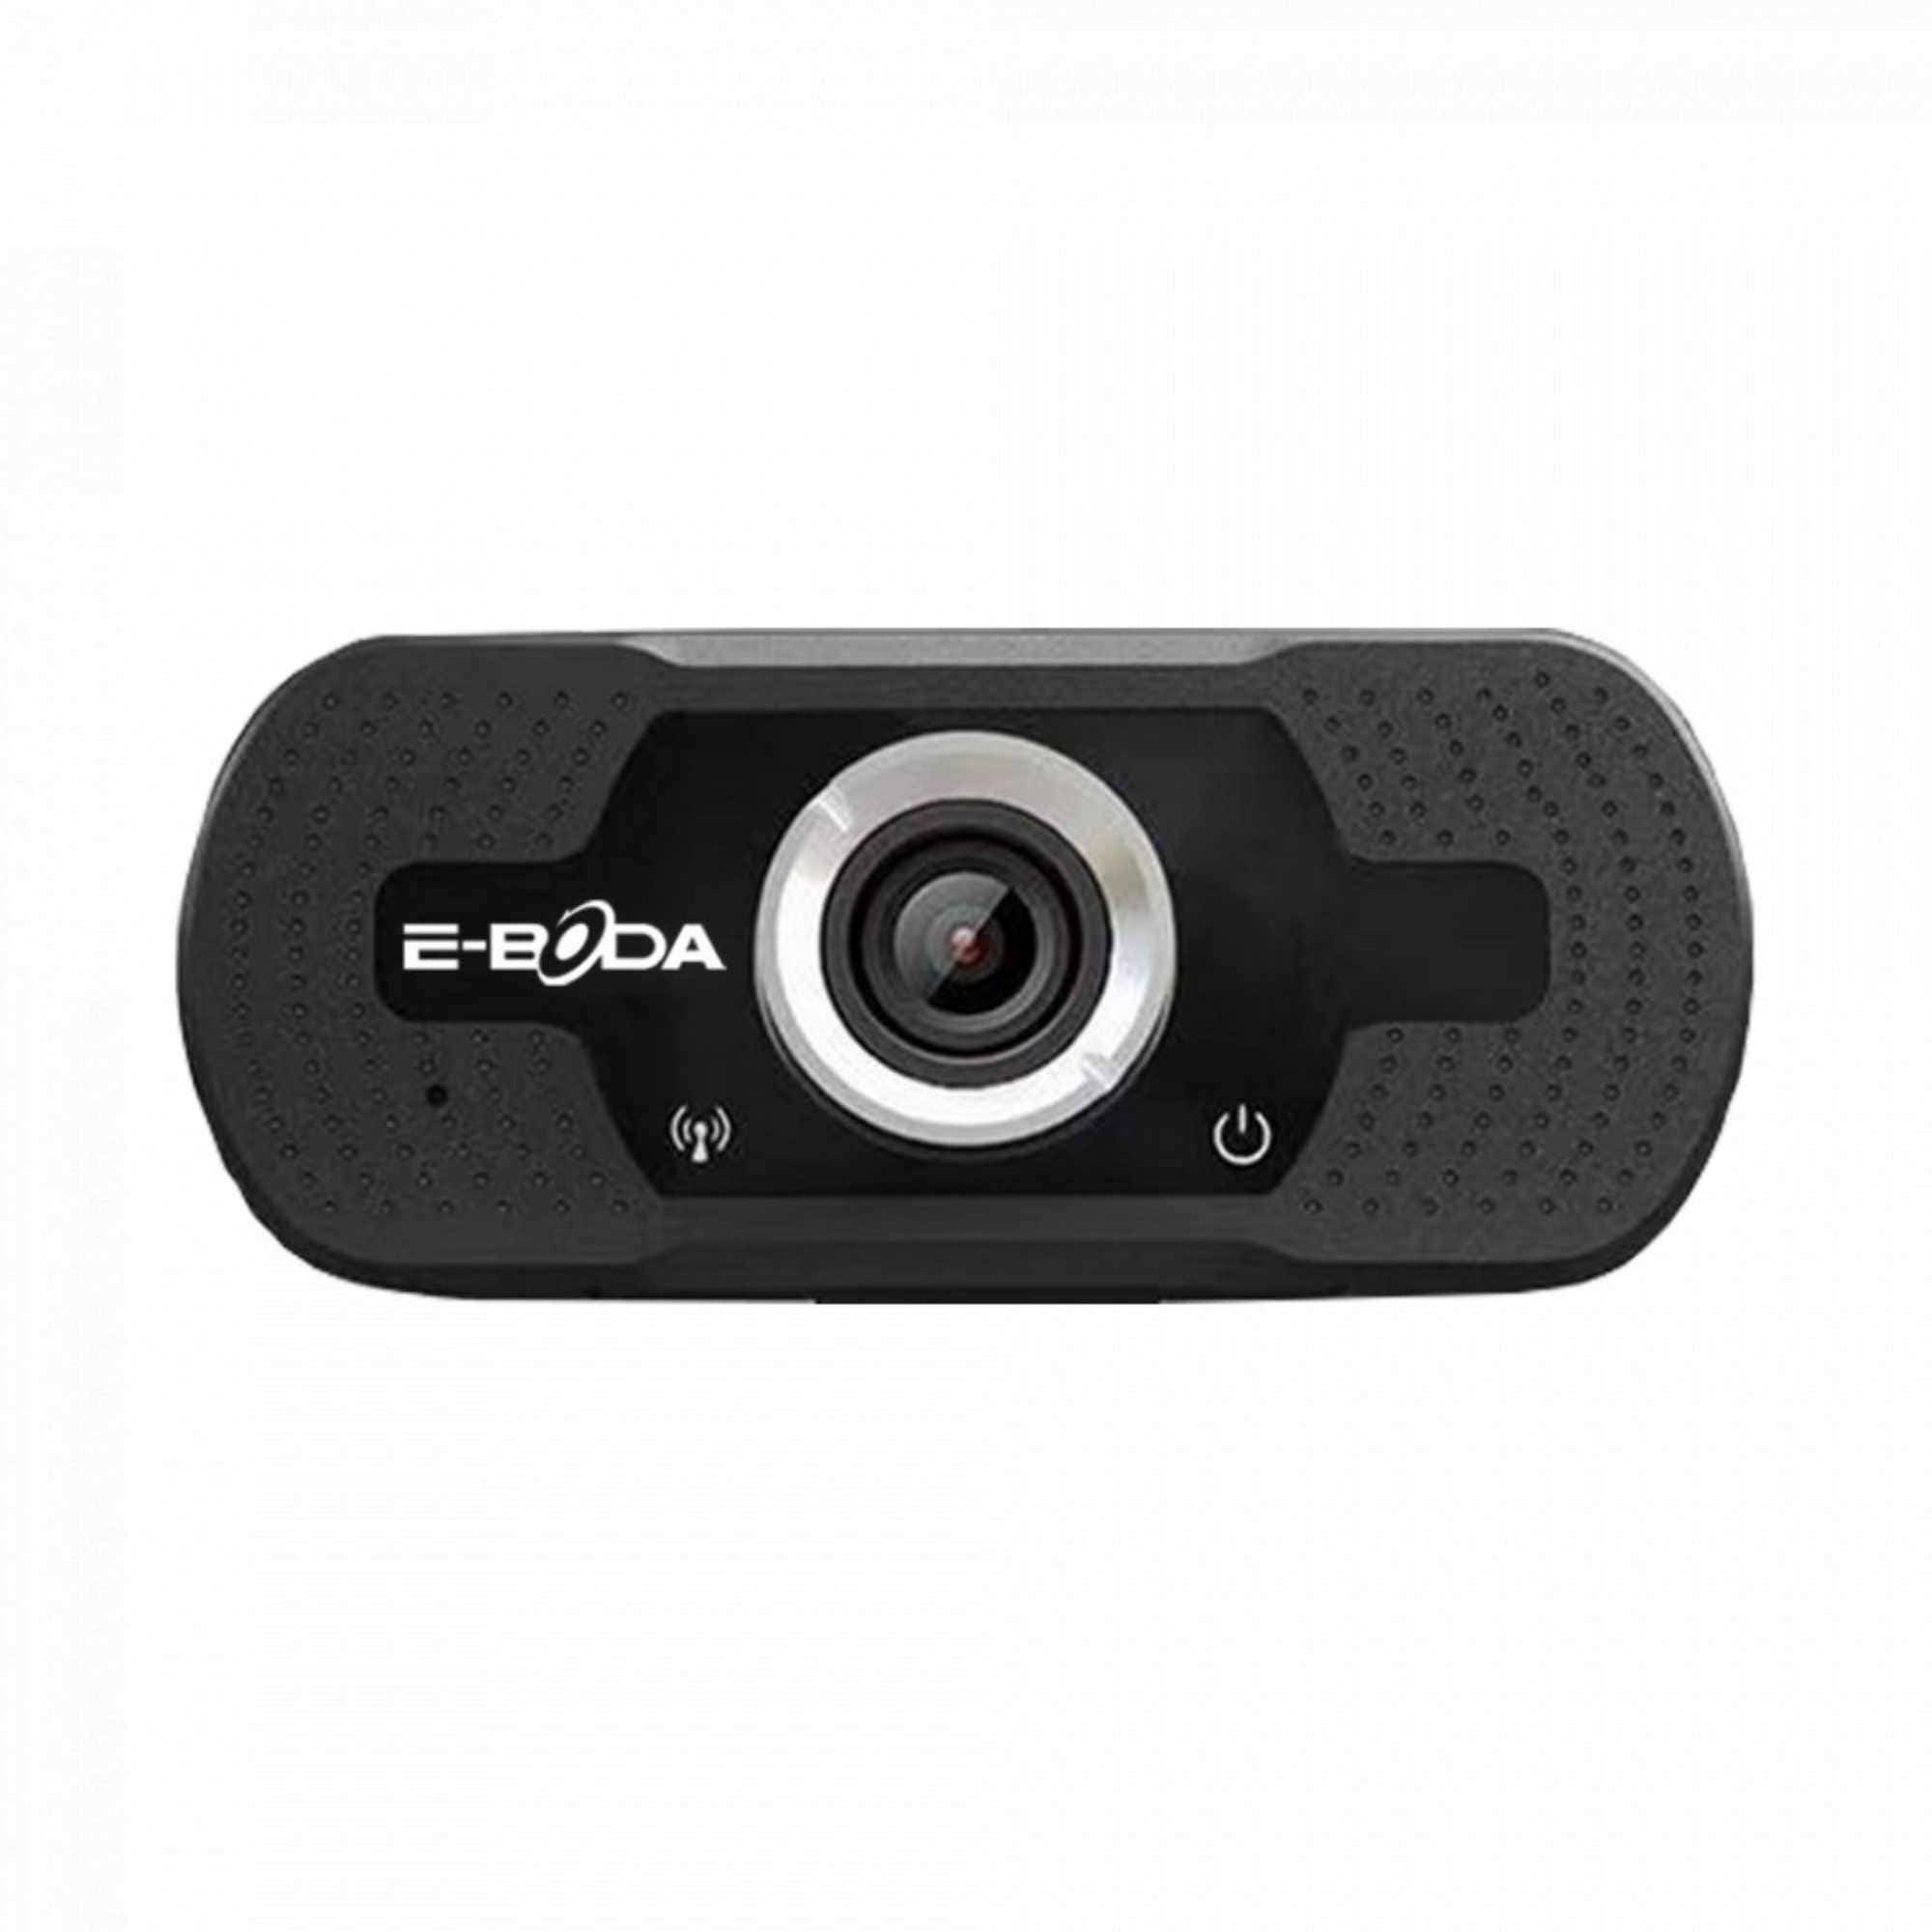 Camera video E-Boda CW 10, 1920 x 1080 px, USB 2.0